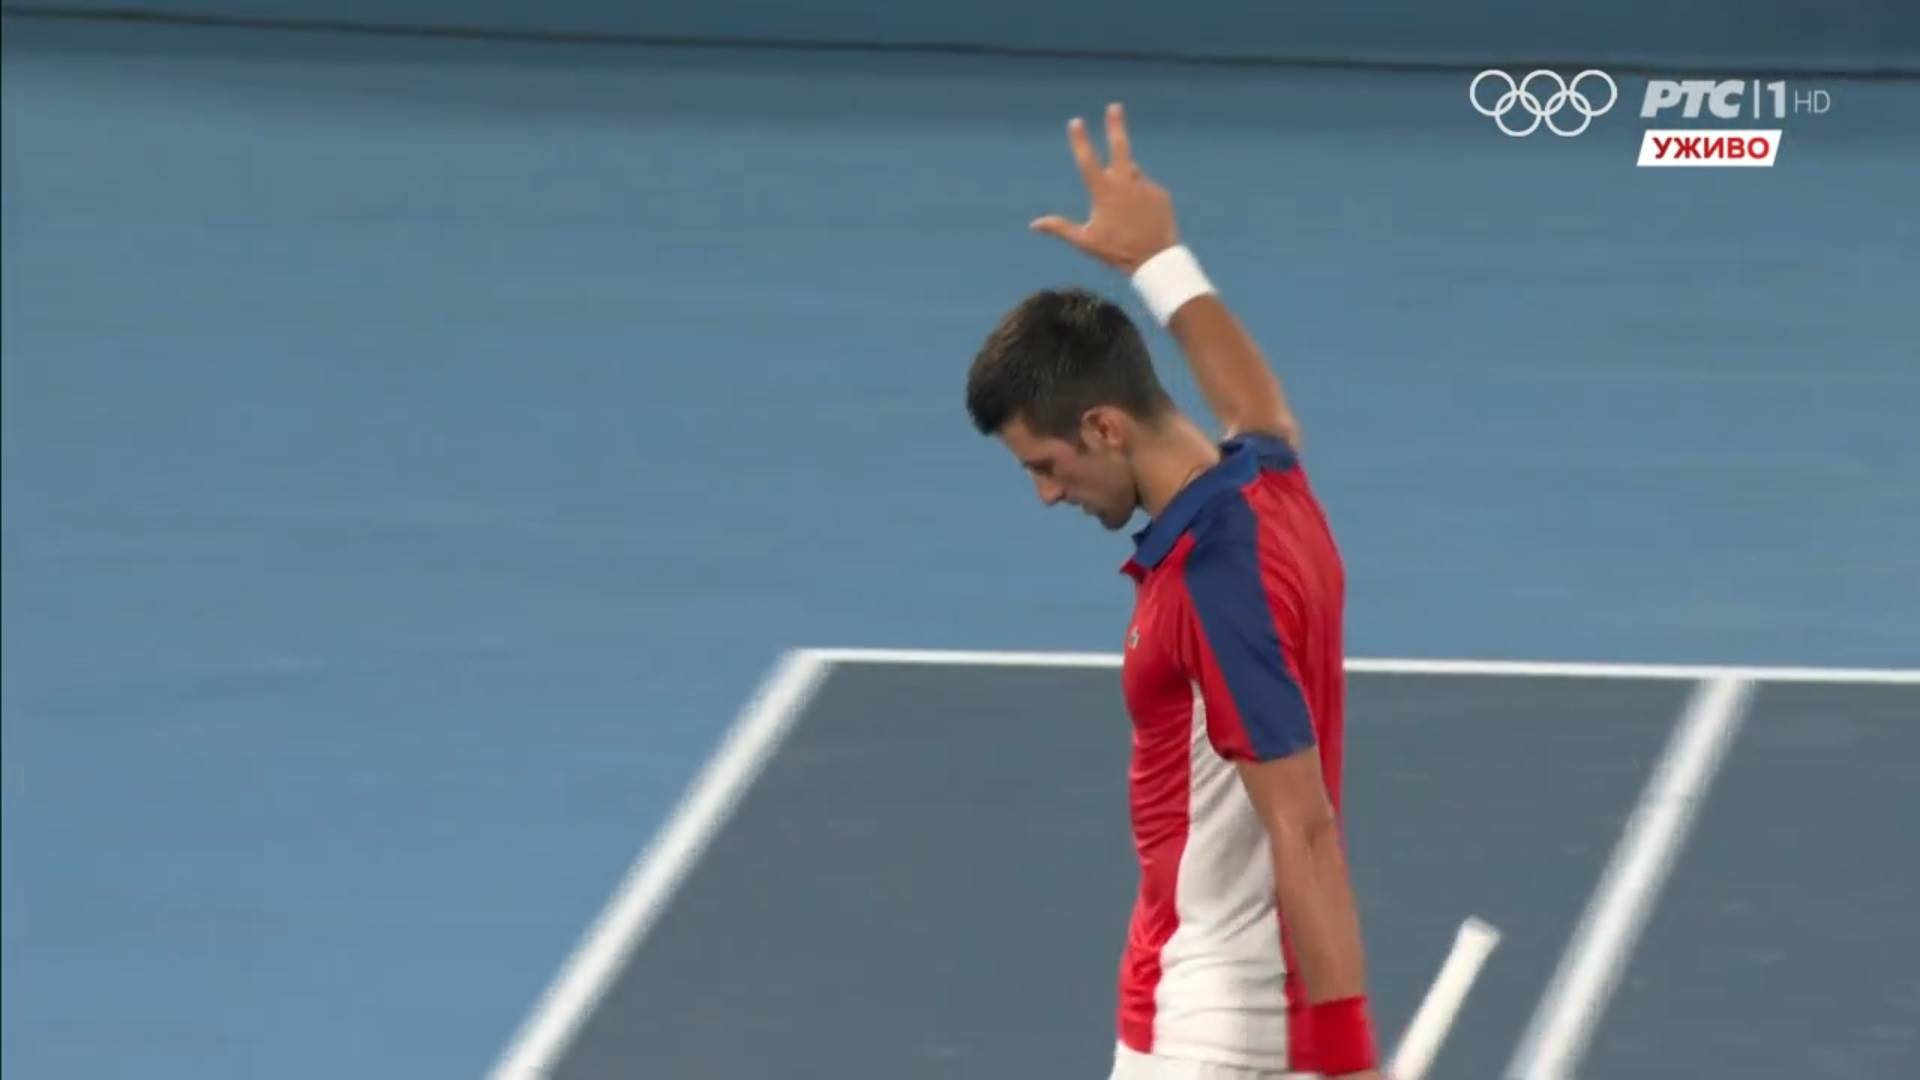  Novak-Djokovic-podigao-tri-prsta-uvis-slavlje-na-Olimpijskim-igrama-VIDEO 